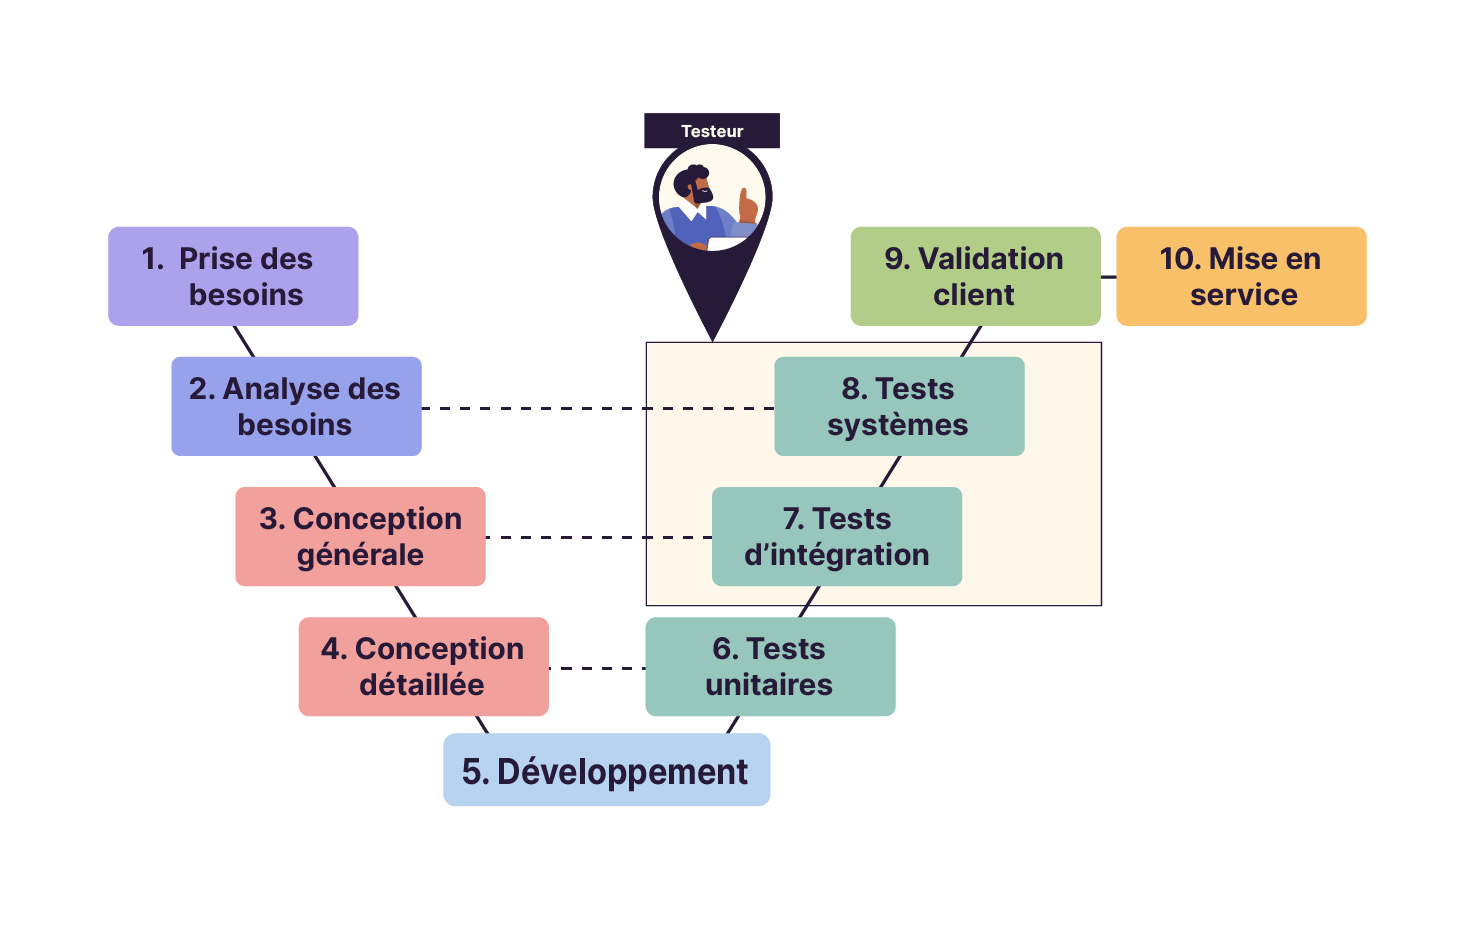 Les 10 étapes sont représentées dans un schéma en V. L’étape “5. développement” étant le point le plus bas. Les étapes “7.tests d’intégration” et “8. tests système” sont encadrées et reliées au personnage du testeur.